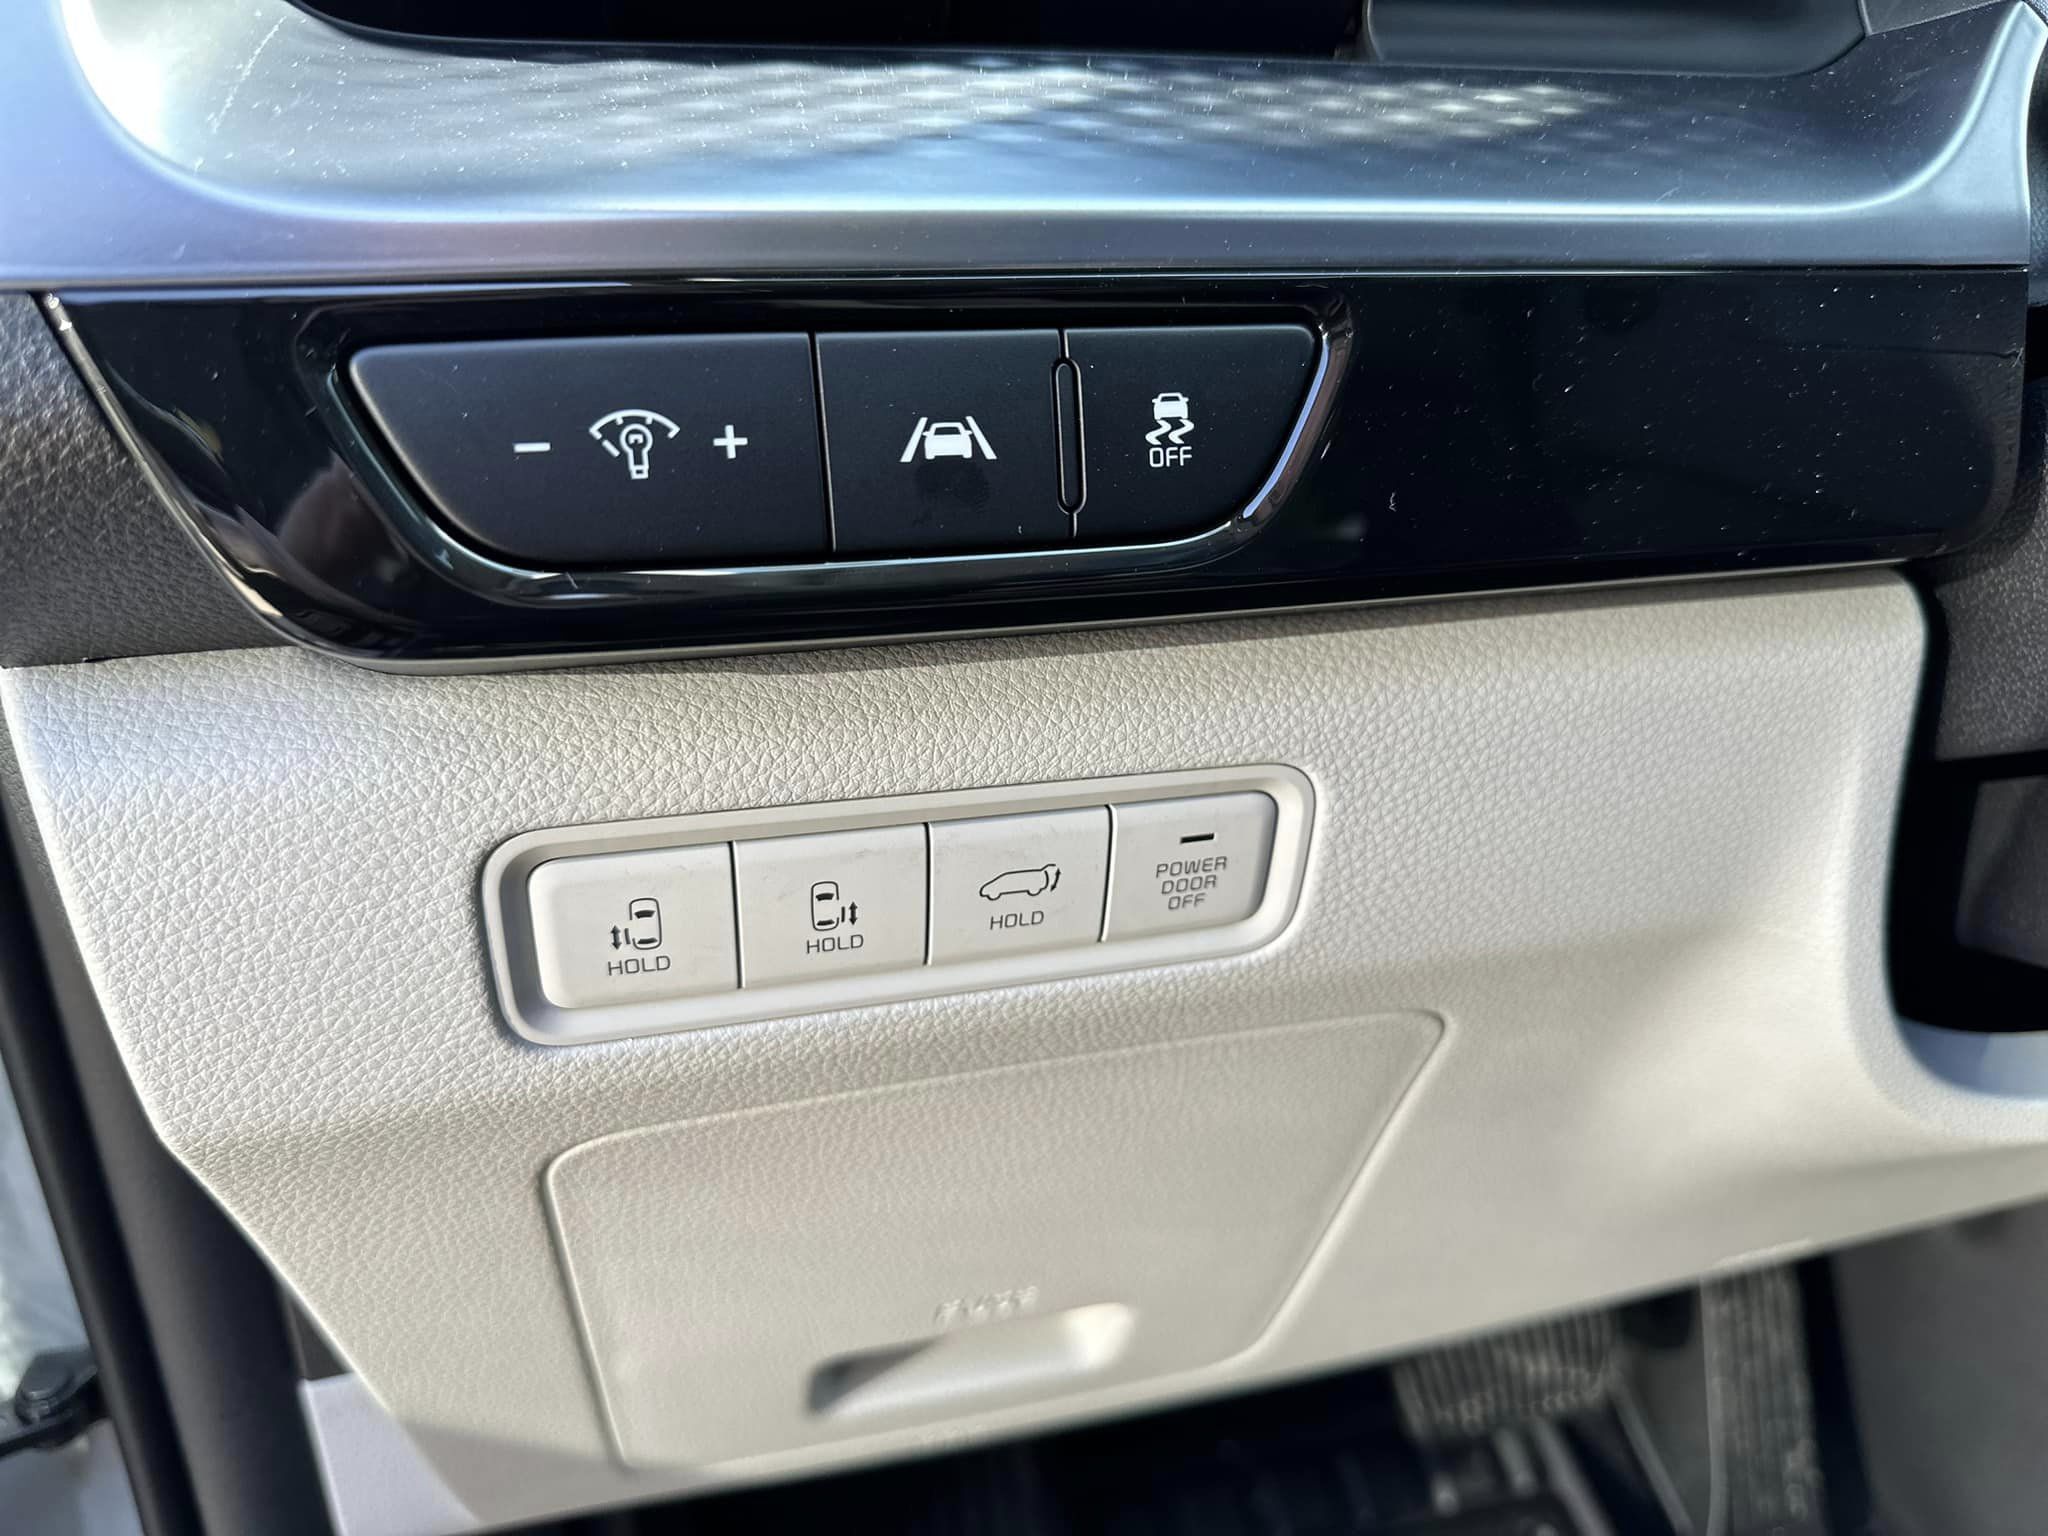 2023 Kia Carnival - Ceramic Gray - SX Prestige Trim - Dash Controls